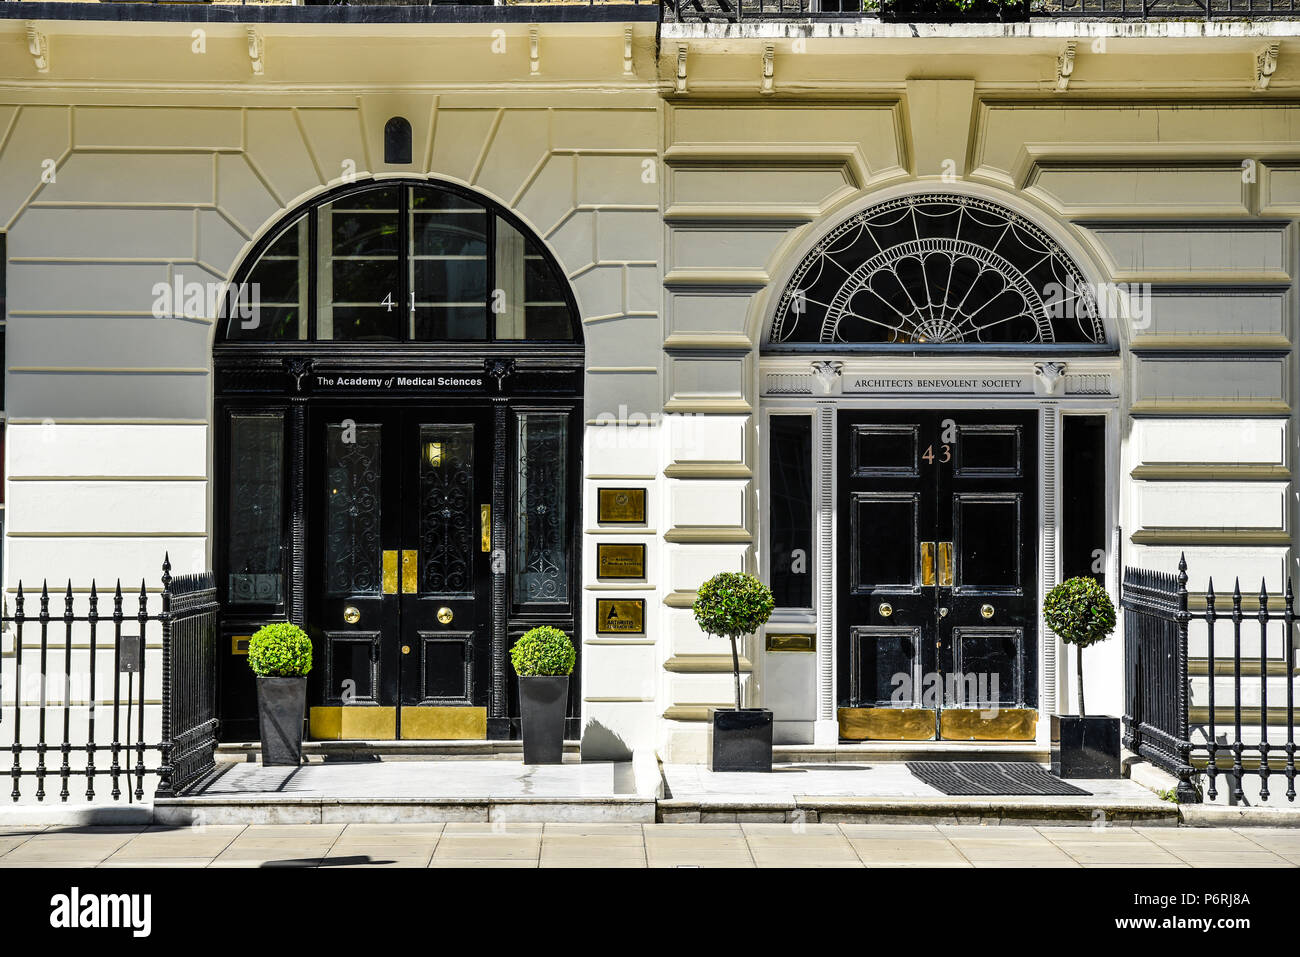 L'Accademia delle scienze mediche e architetti benevolo società porte anteriori in Portland Place, Londra, Regno Unito. Numeri 41 e 43 Foto Stock